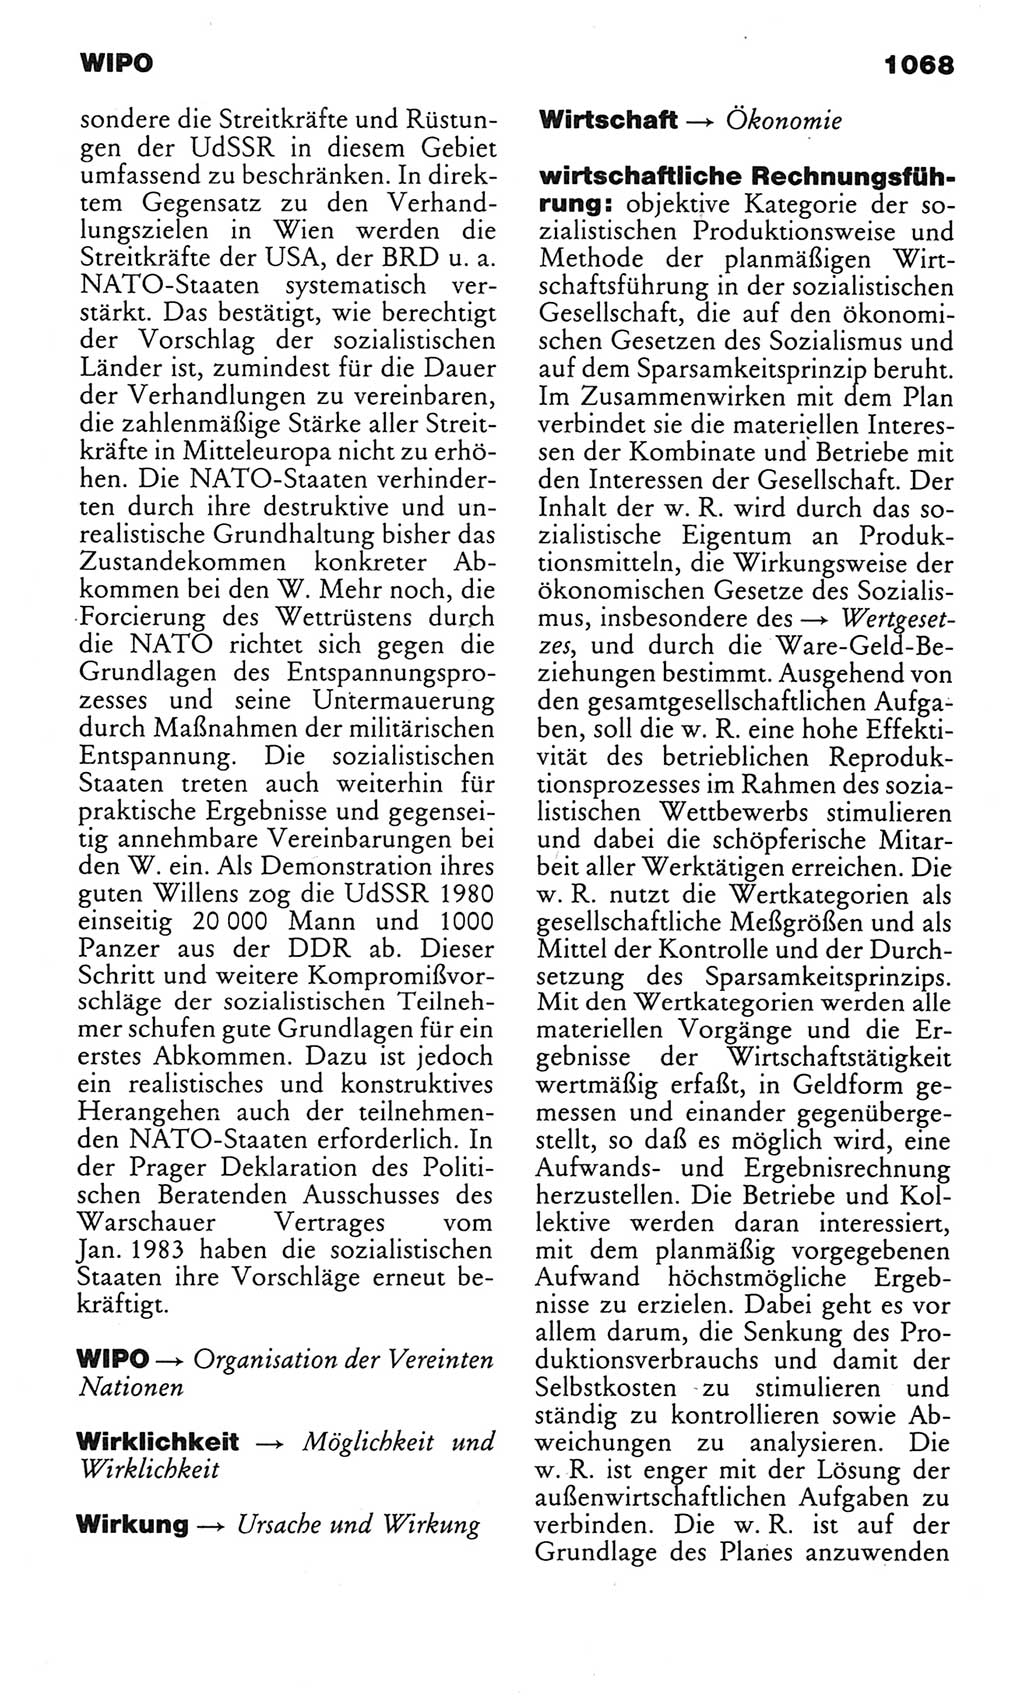 Kleines politisches Wörterbuch [Deutsche Demokratische Republik (DDR)] 1985, Seite 1068 (Kl. pol. Wb. DDR 1985, S. 1068)